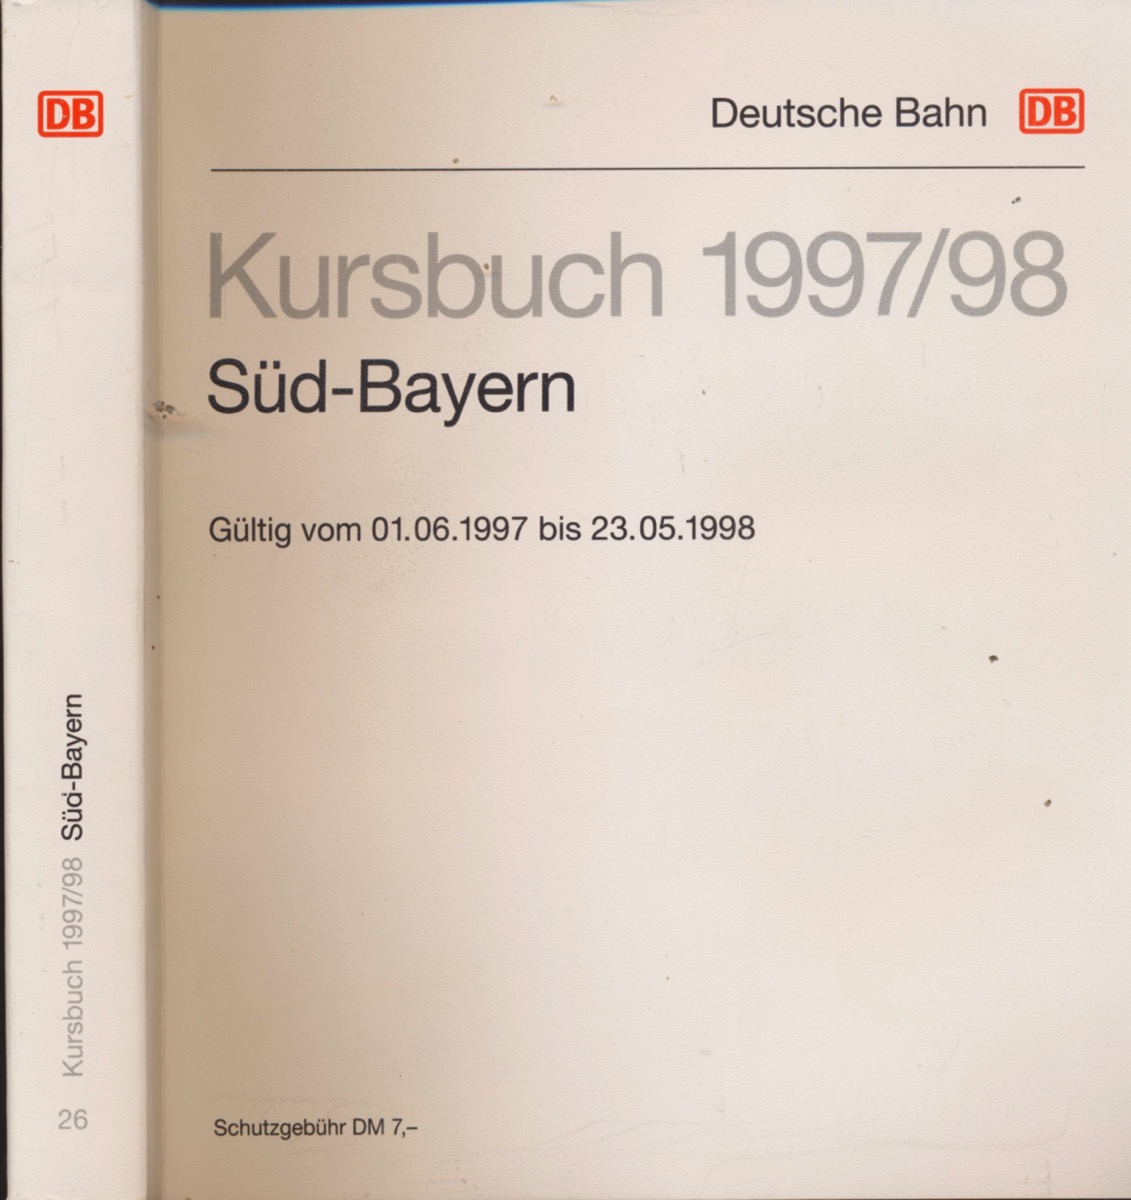 DEUTSCHE BAHN (Hrg.)  Kursbuch Süd-Bayern 1997/98, gültig vom 01.06.1997 bis 23.05.1998. 